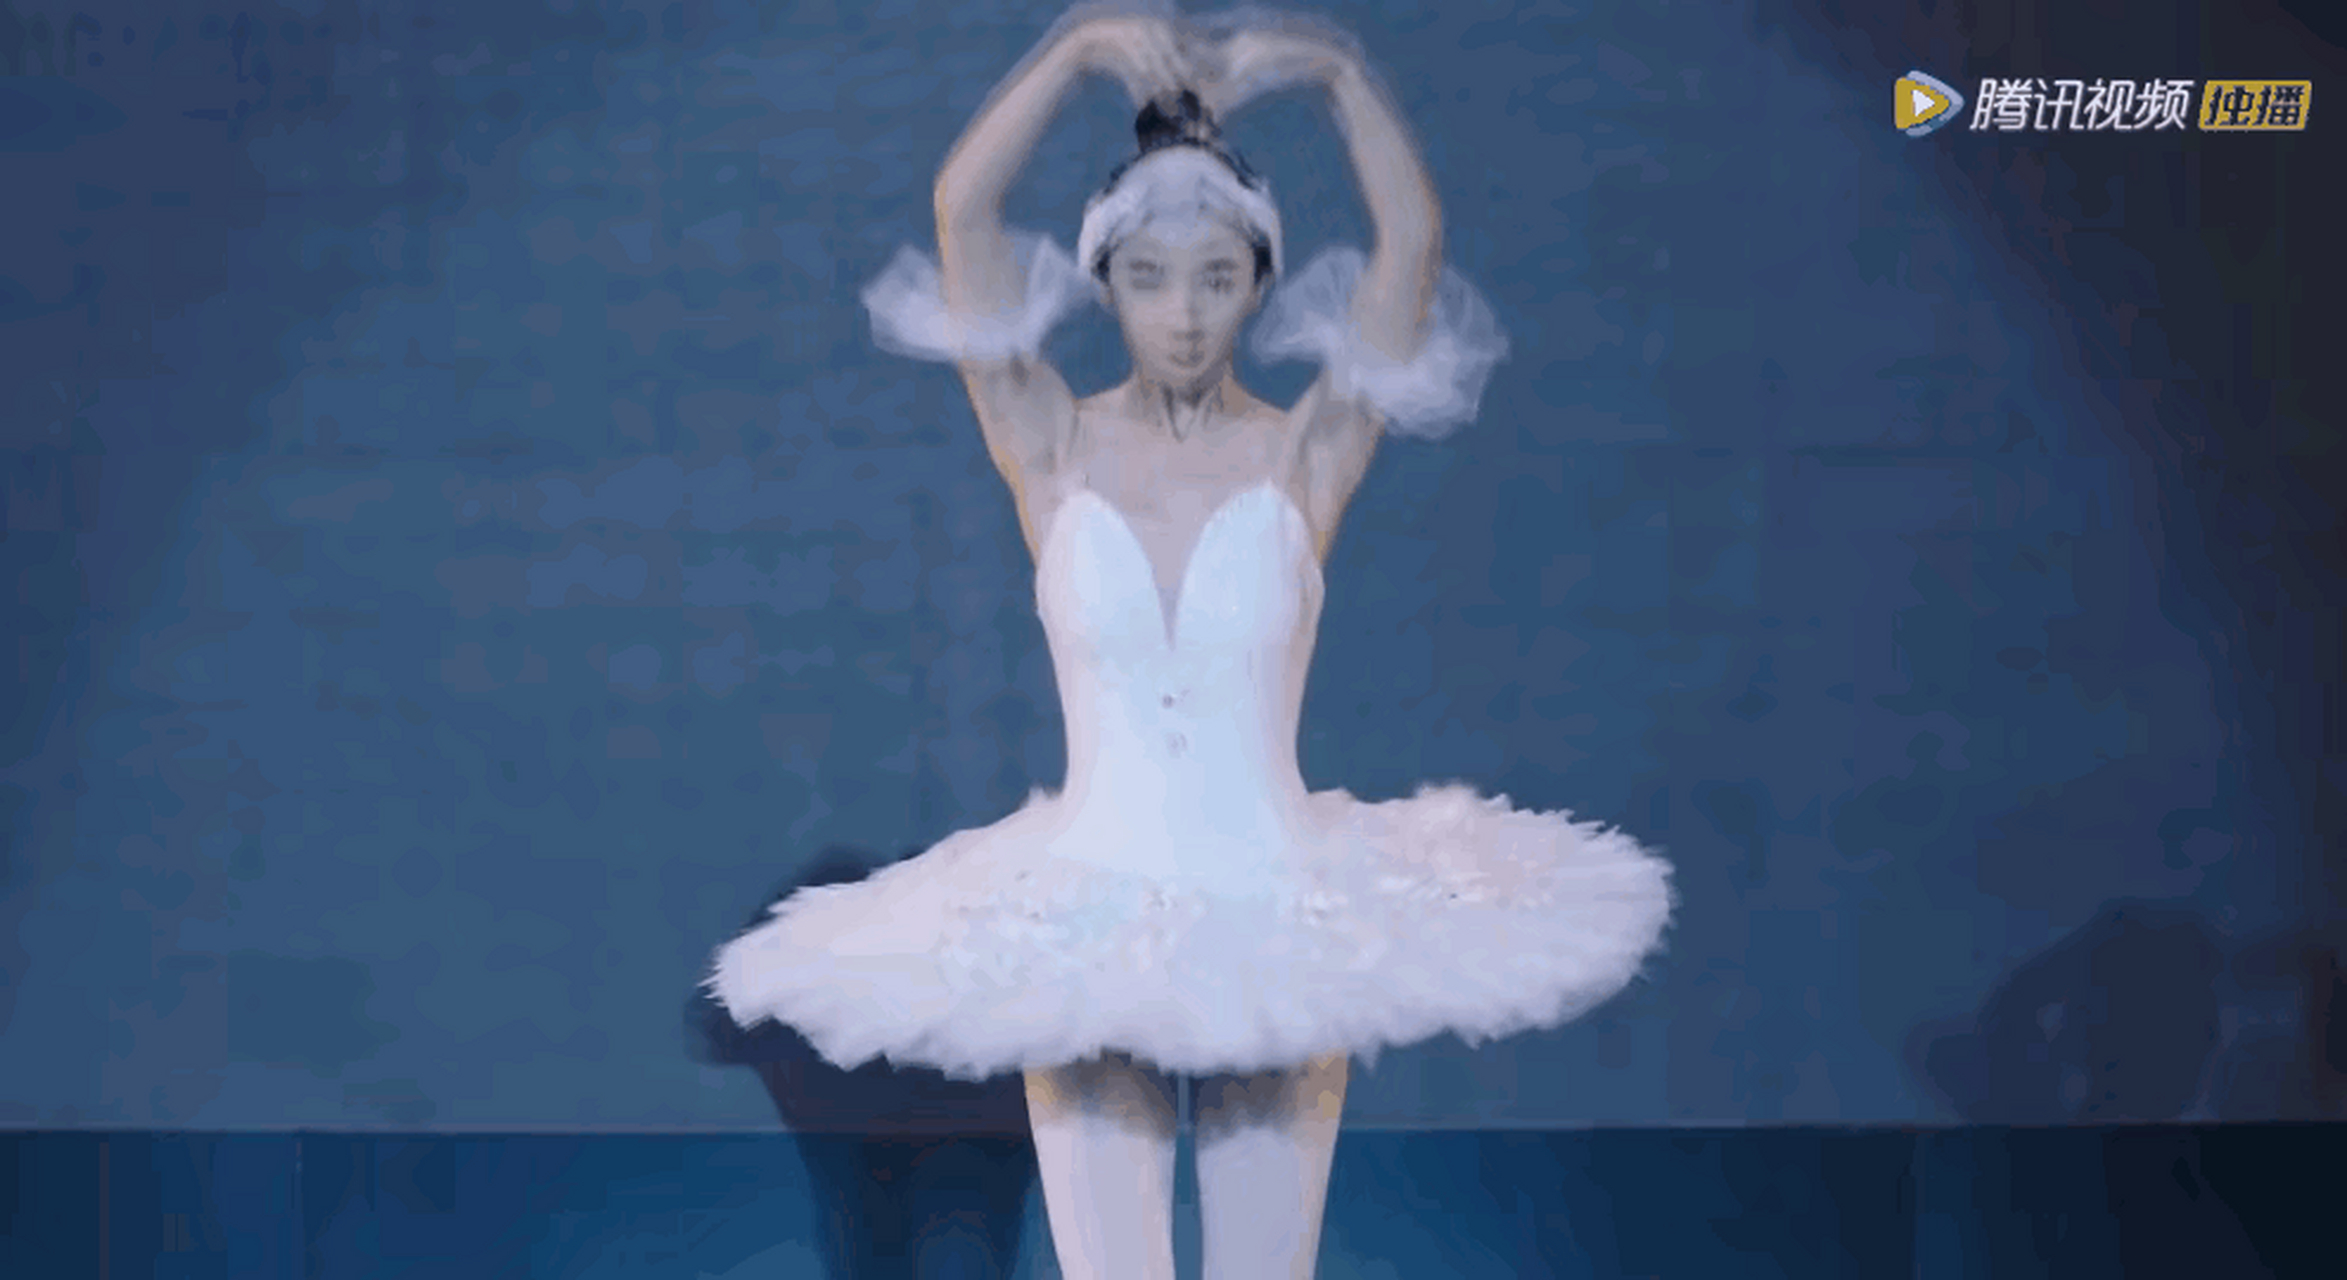 宋茜,傅菁,李一桐跳起芭蕾舞,你觉得谁的舞姿最优美呢?